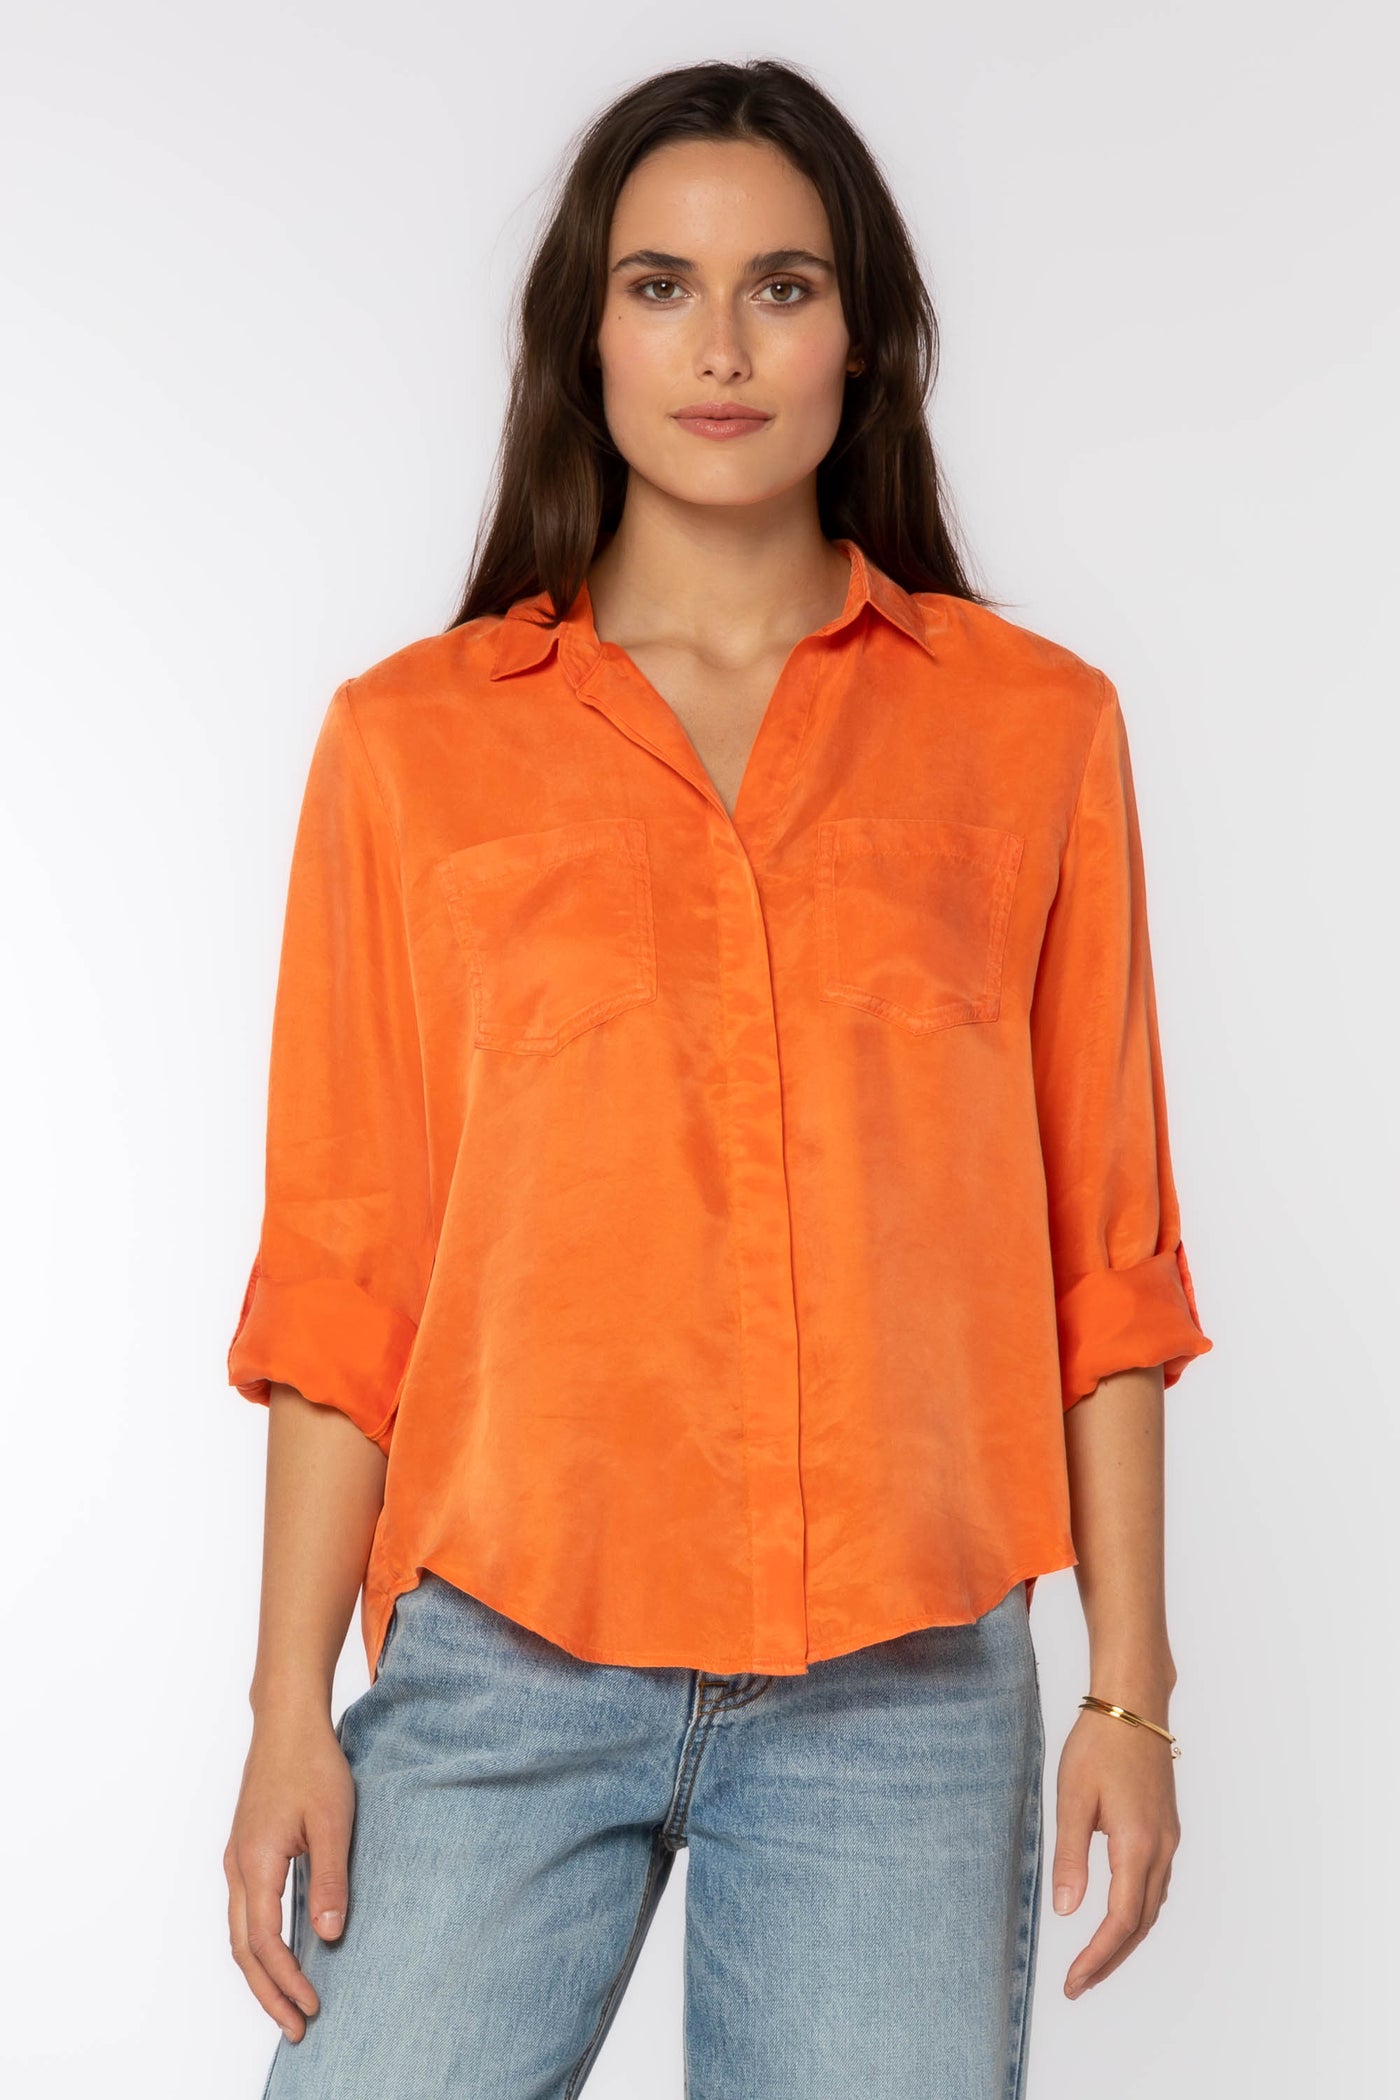 Riley Shirt - Tops - Velvet Heart Clothing